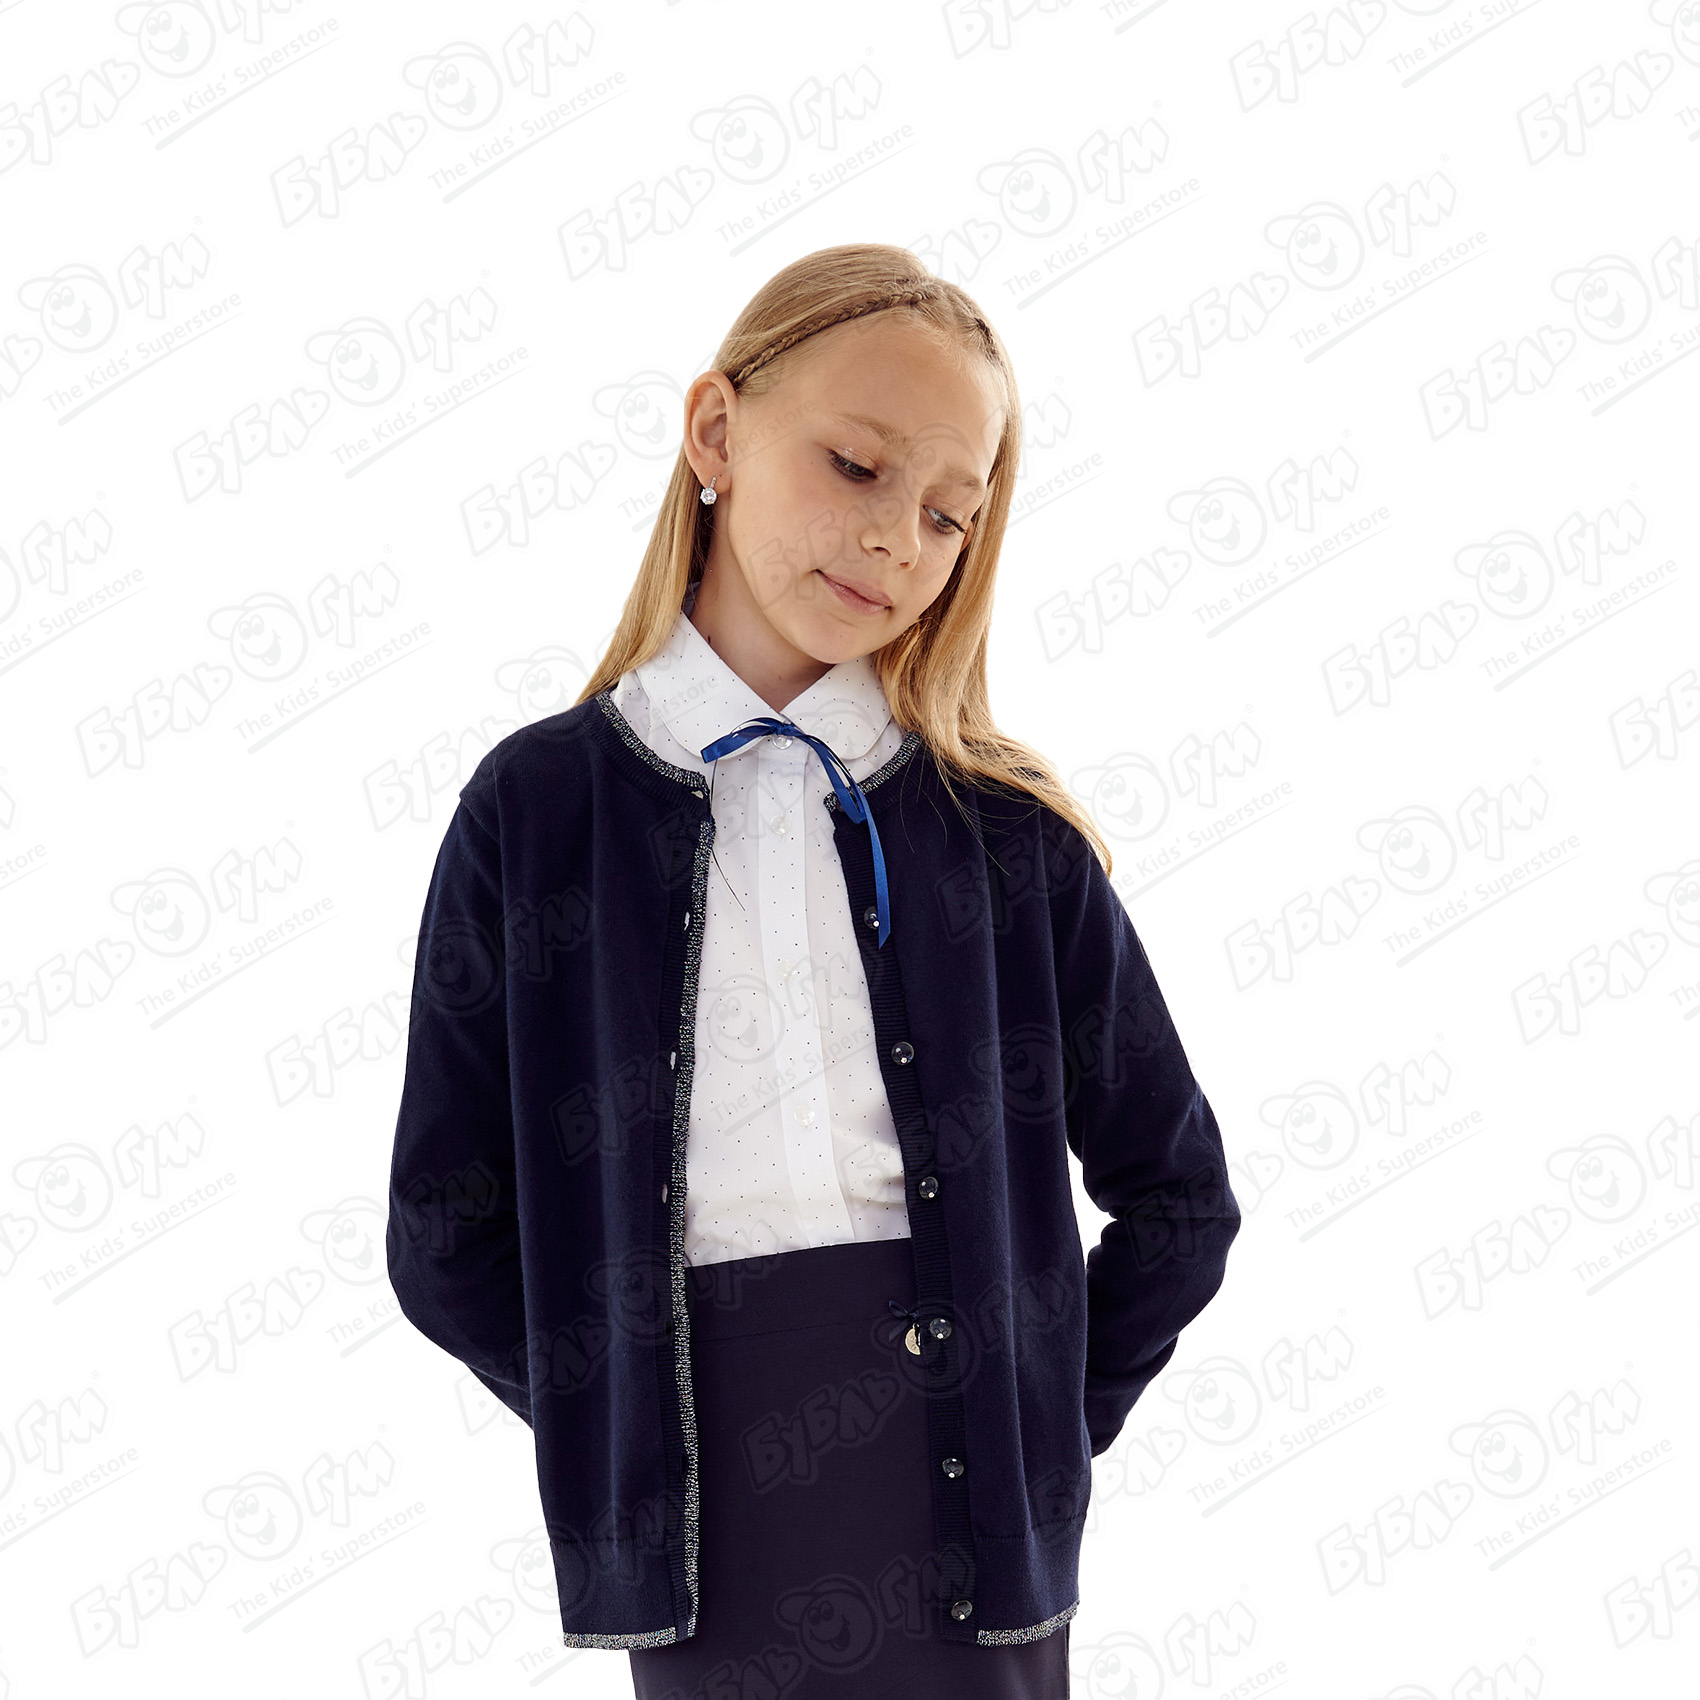 Каталог школьной формы. Цены и фото школьной одежды в Краснодаре